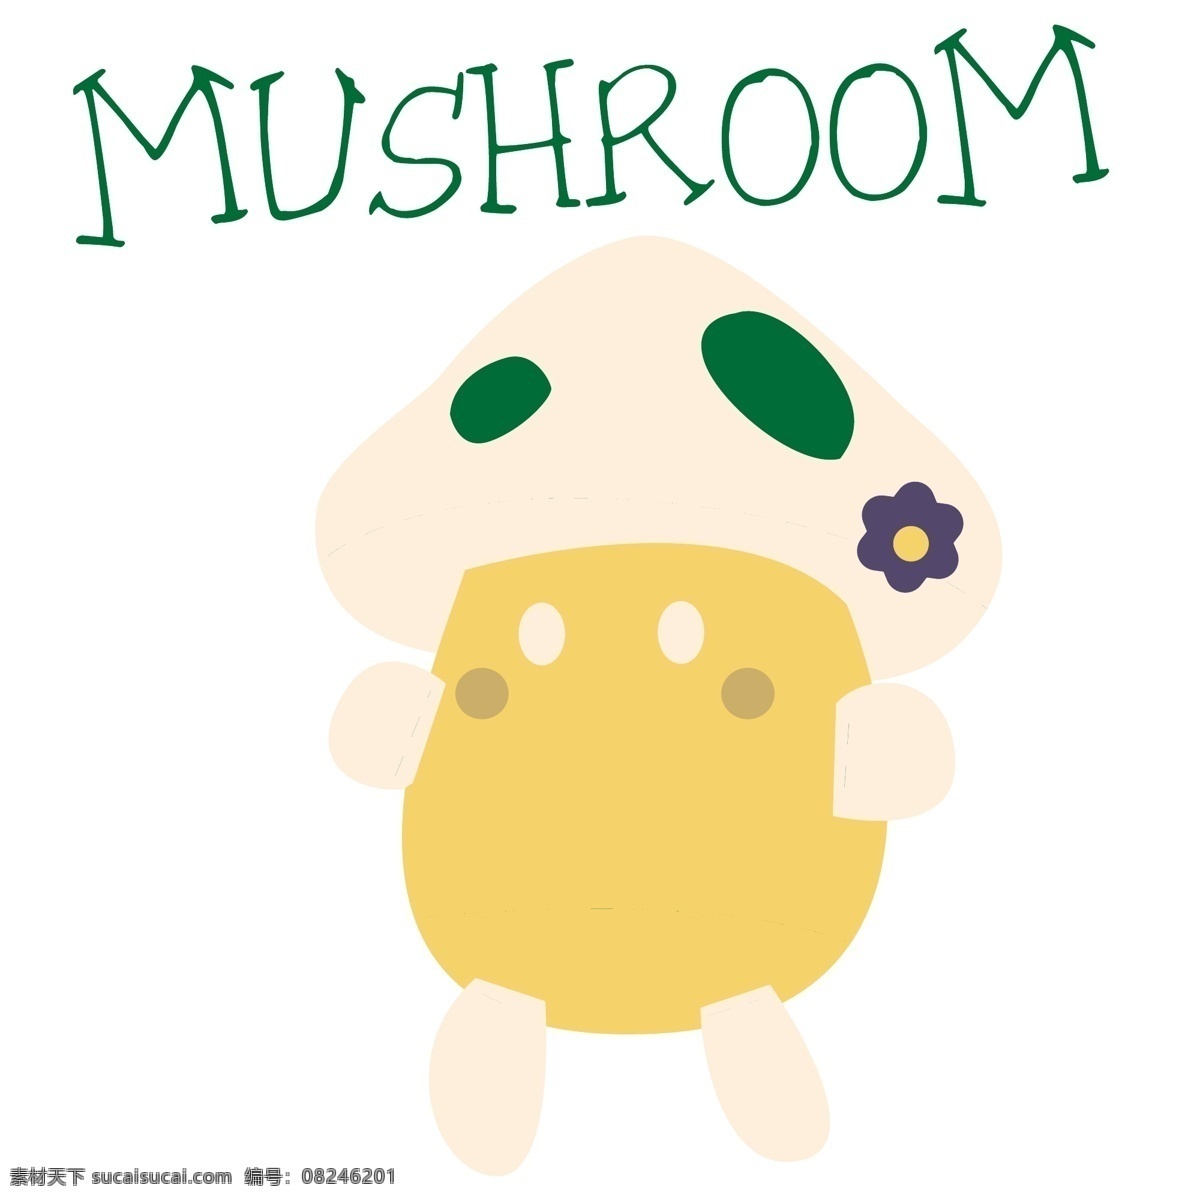 位图免费下载 t恤图案 服装图案 蘑菇 位图 文字 婴童 面料图库 服装设计 图案花型